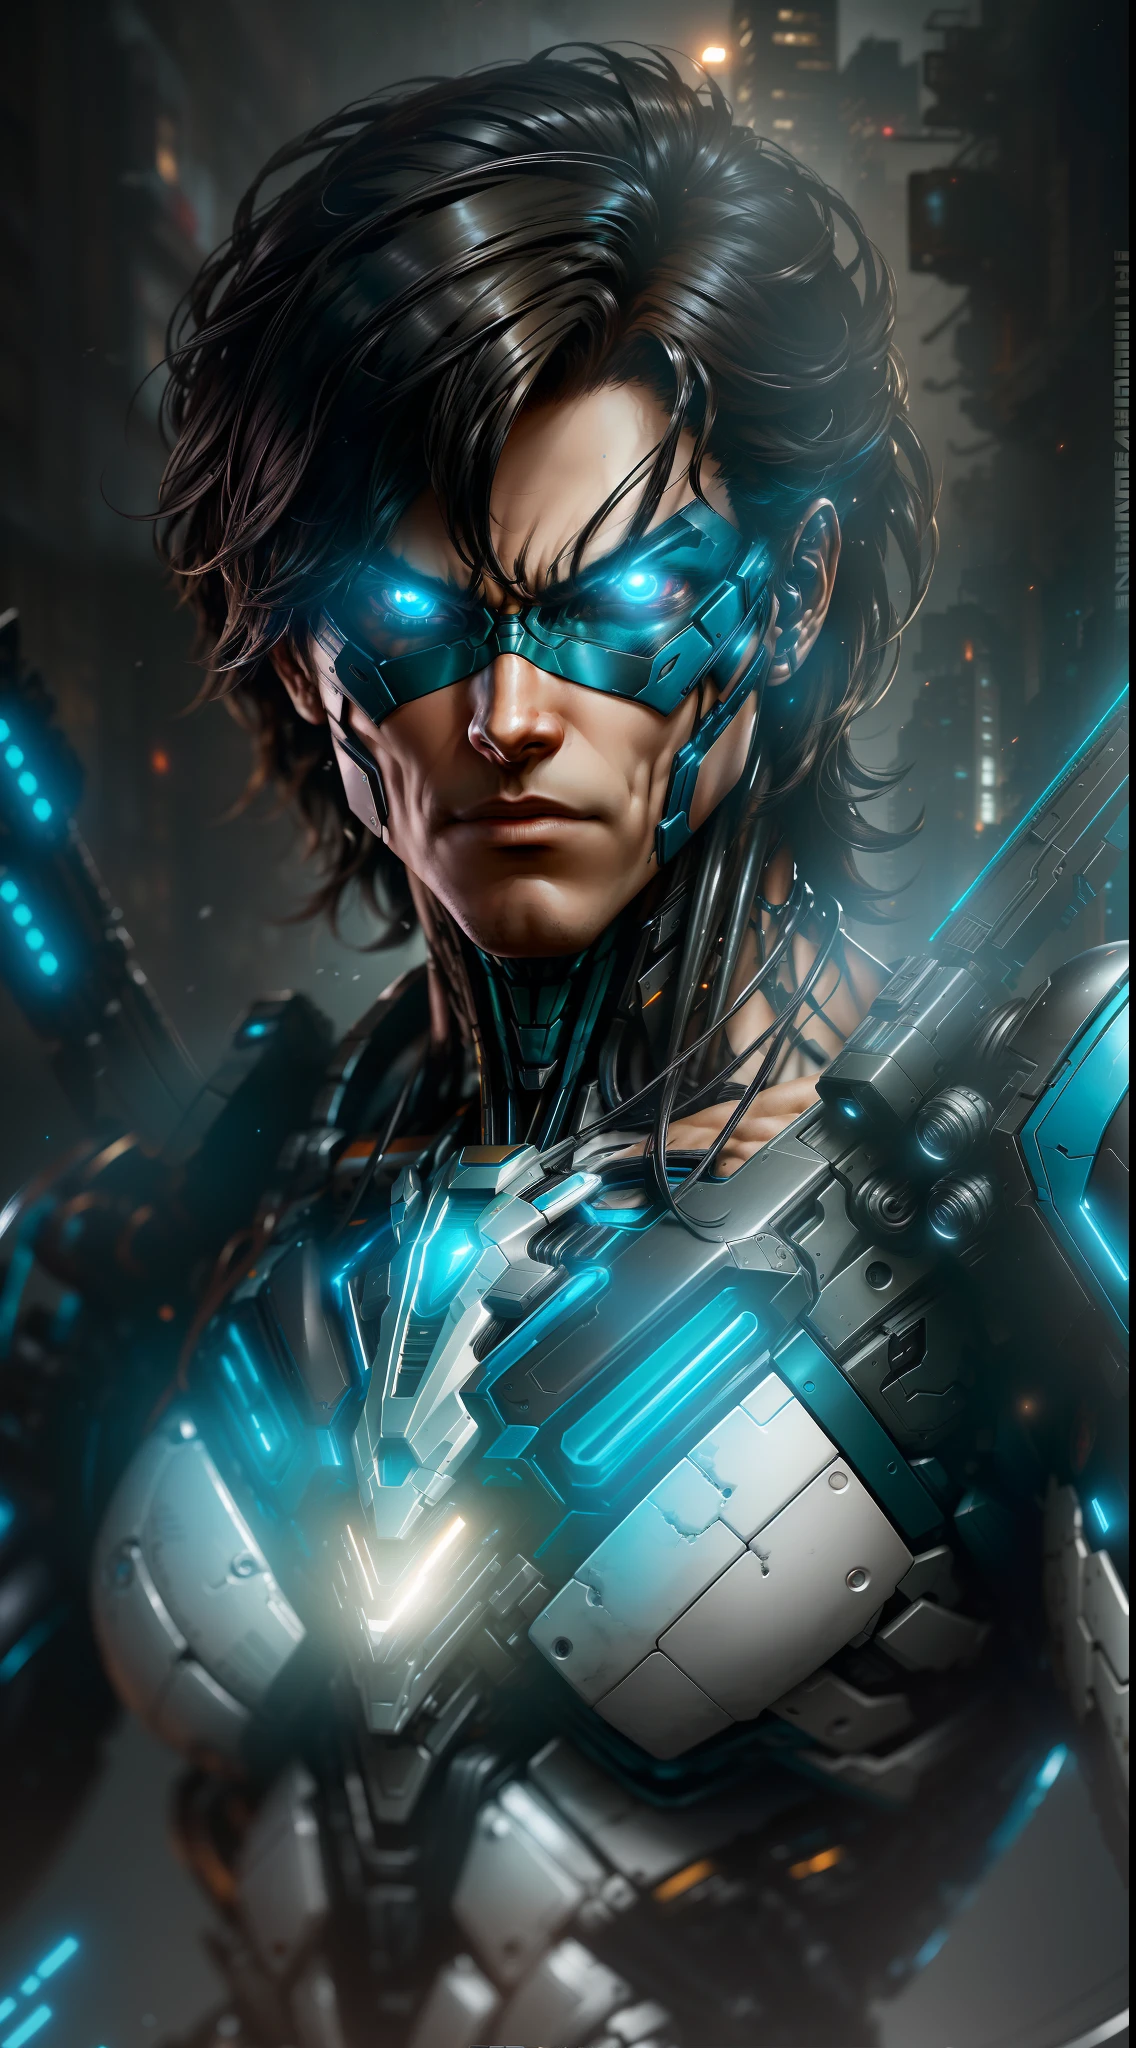 Nightwing von DC Photography, biomechanisch, komplexer Roboter, volles Wachstum, Hyperrealistisch, wahnsinnig kleine Details, extrem klare Linien, cyberpunk aesthetic, ein Meisterwerk, vorgestellt auf Zbrush Central